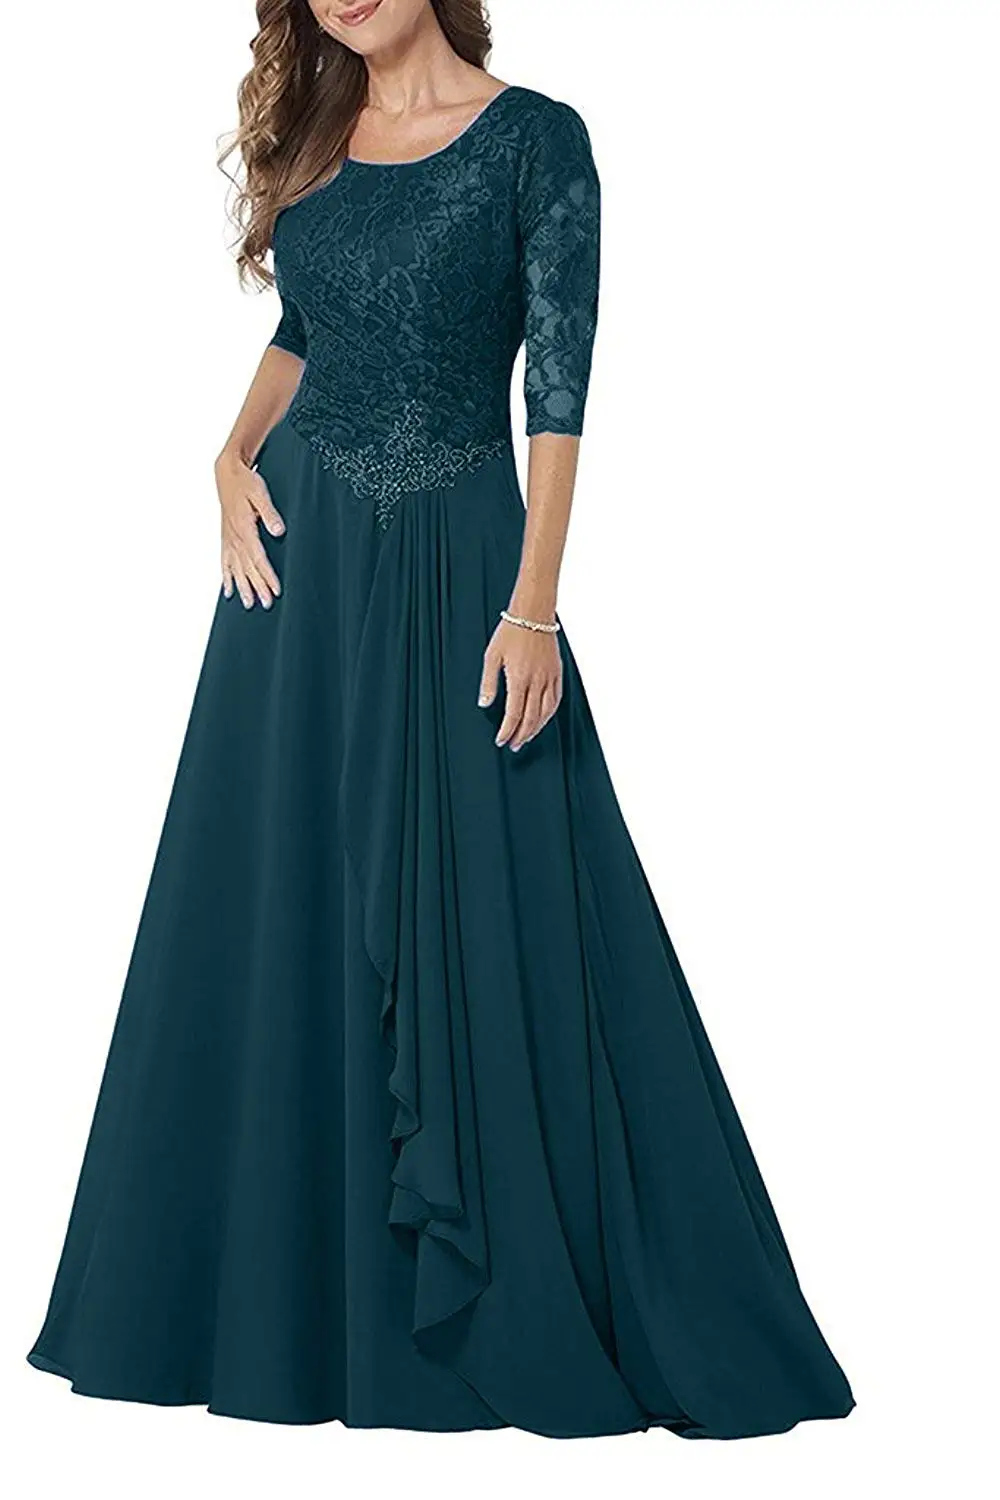 Женское кружевное шифоновое платье с круглым вырезом, 1/2 рукав, платье для матери невесты, а-силуэт, наряд для выпускного, длинный со складками и бусинами